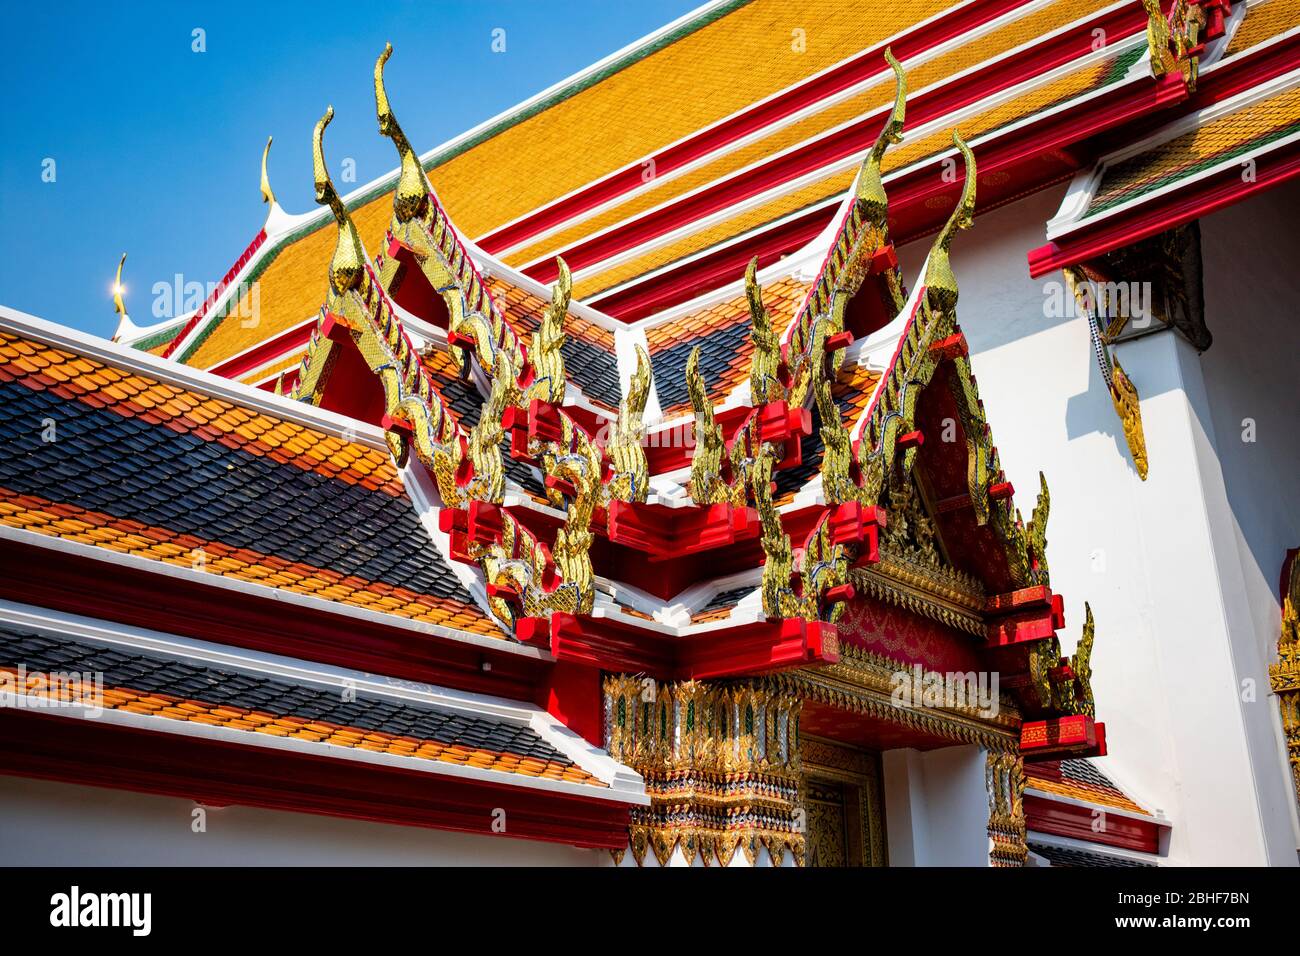 Thailandia, Bangkok - 12. januar 2019 - die schönen Dächer der Tempel in wat Pho in Bangkok Stockfoto